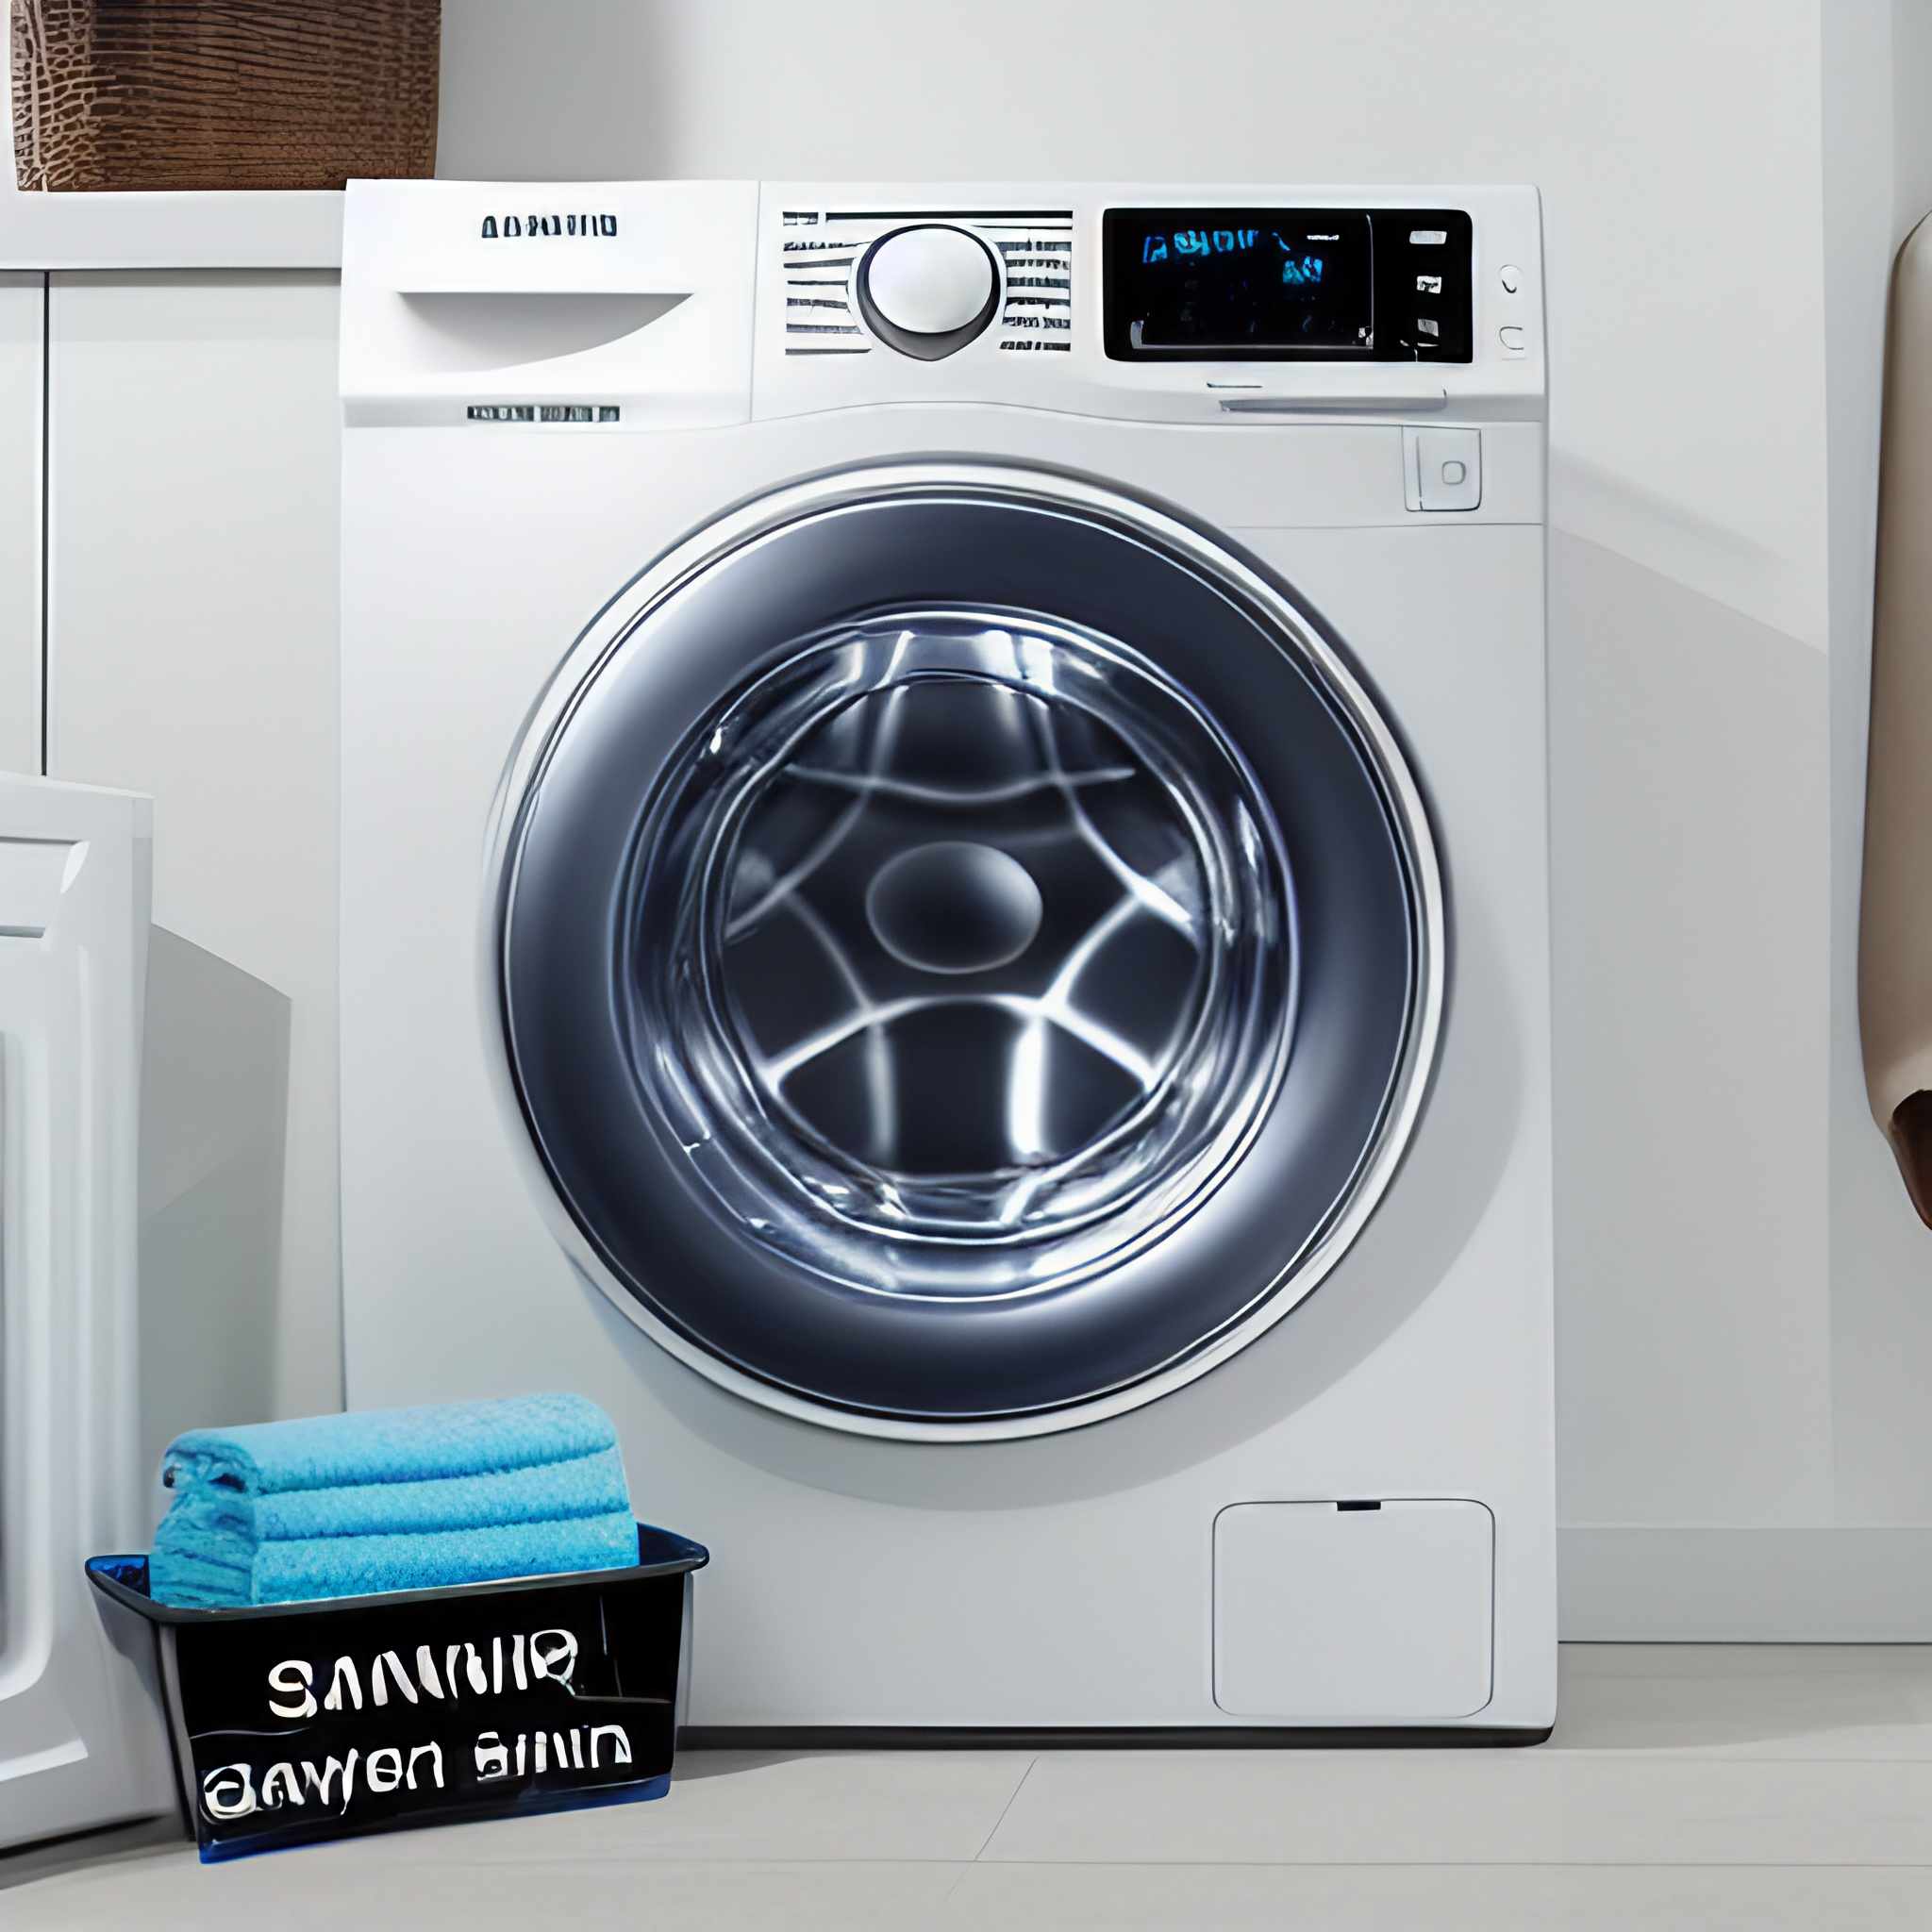 Common Samsung Washing Machine Repairs